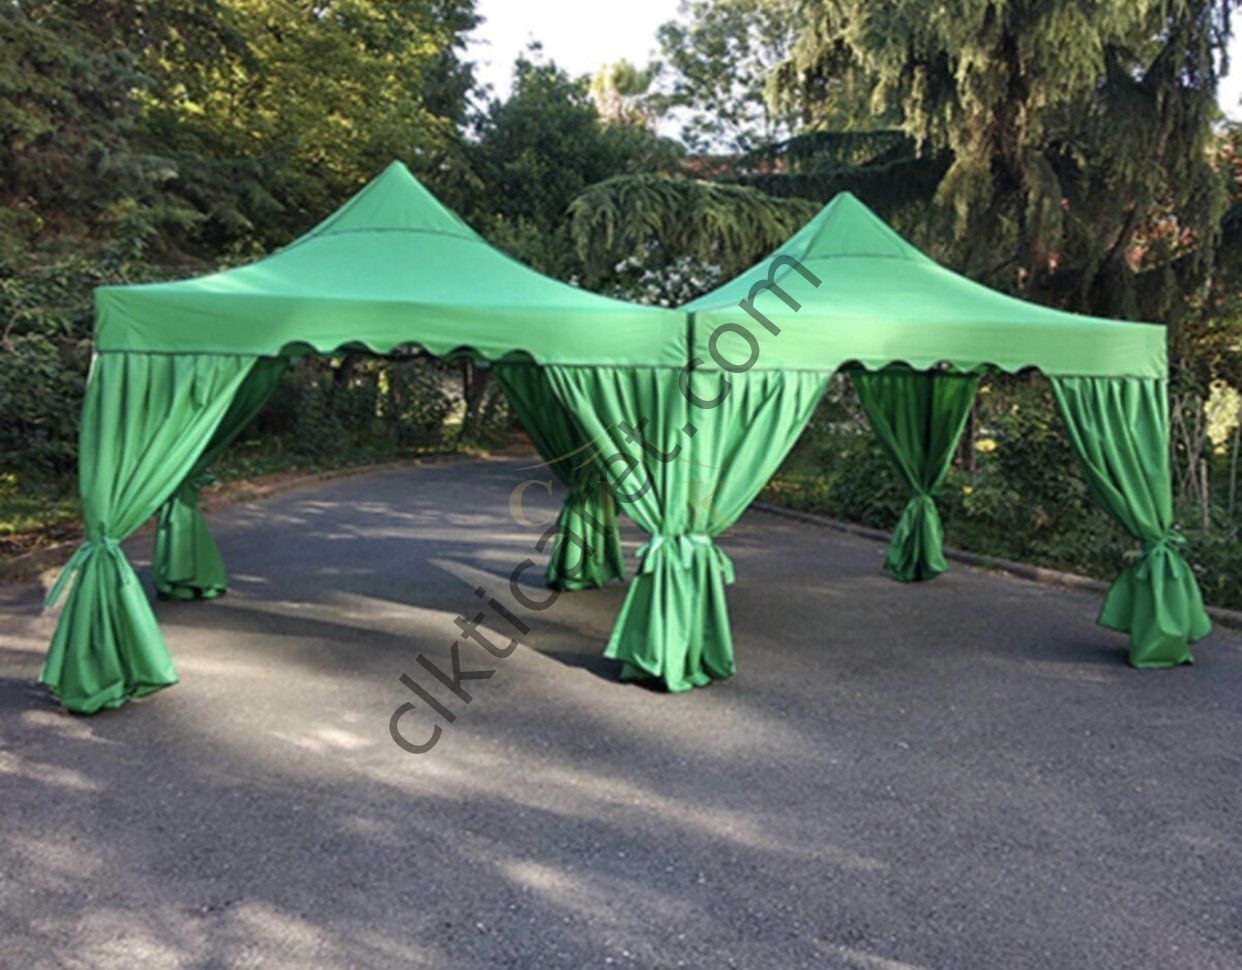 CLK 3x3 40 mm Garden Katlanabilir Tente Bahçe Çadır Yeşil Çardak Bungalow Serisi